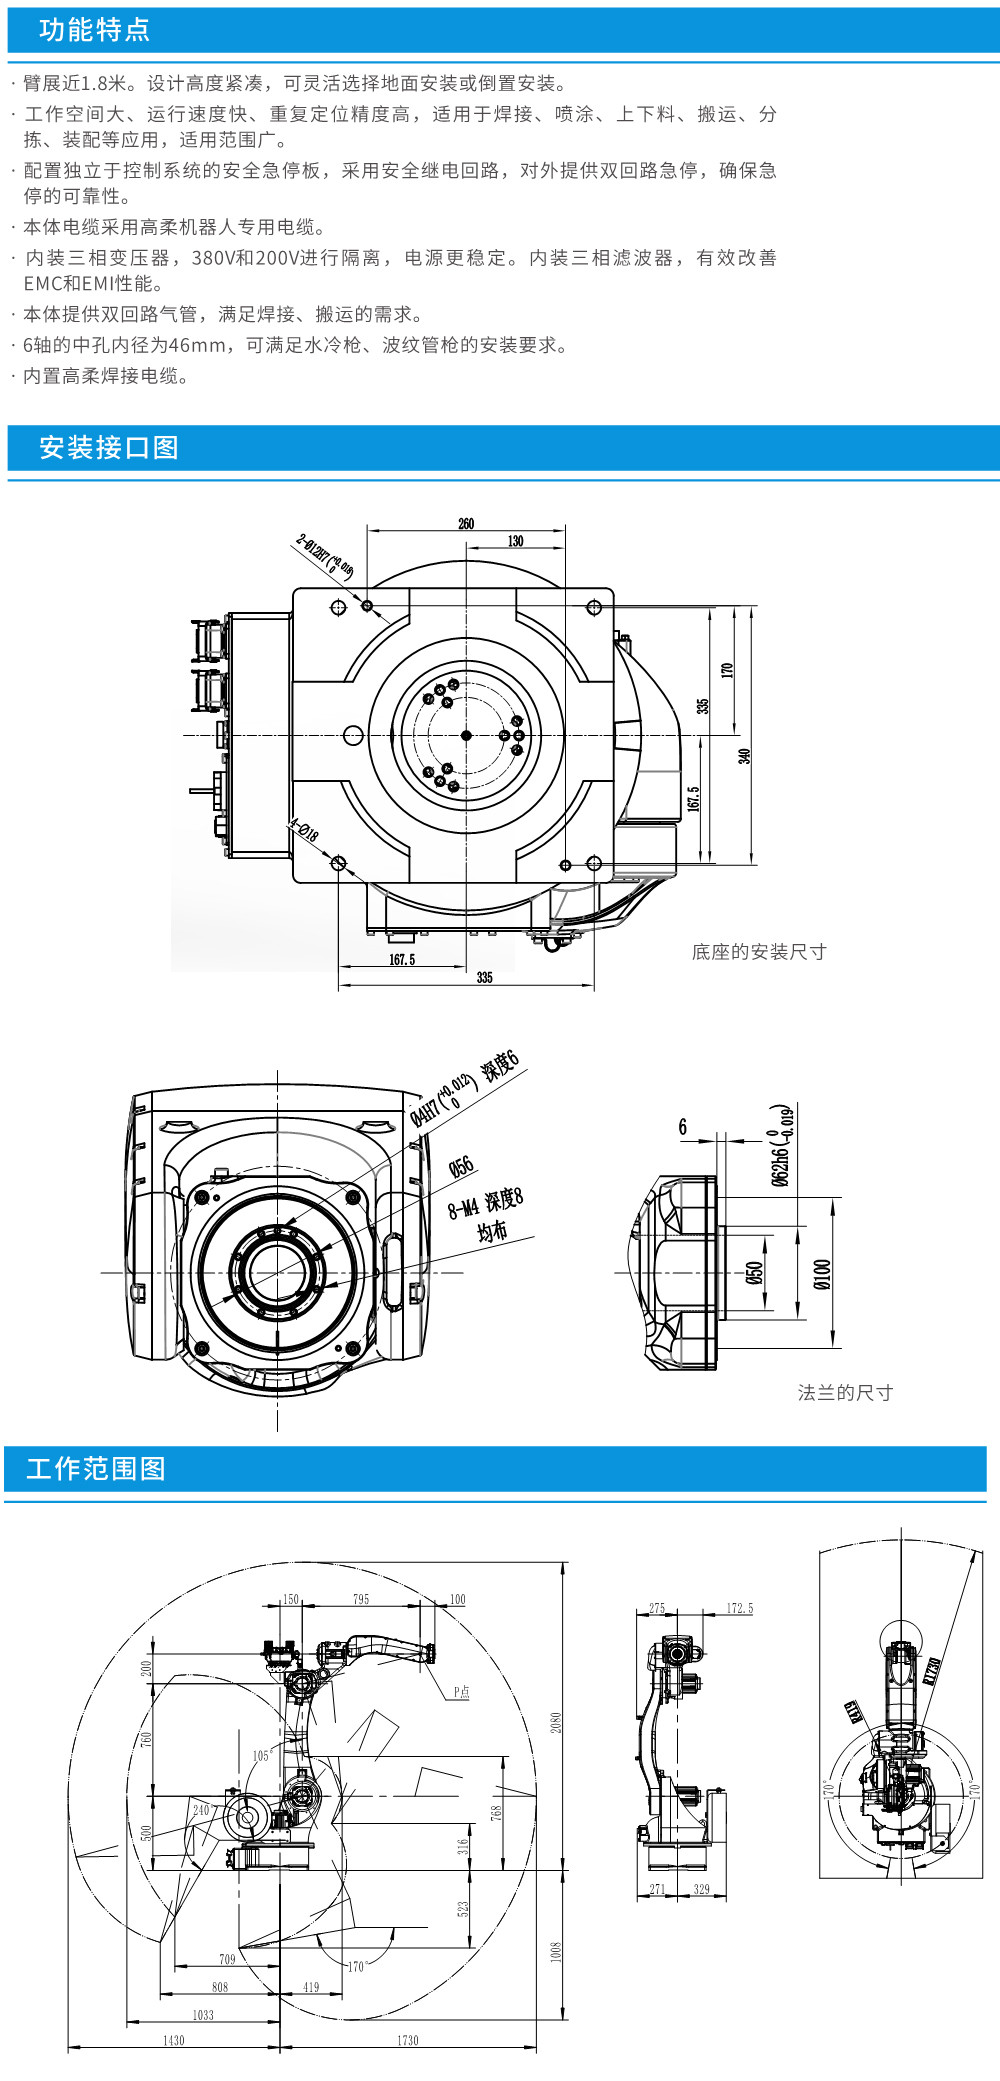 工业机器人焊接用途CRP-RH18-20-W-1.jpg